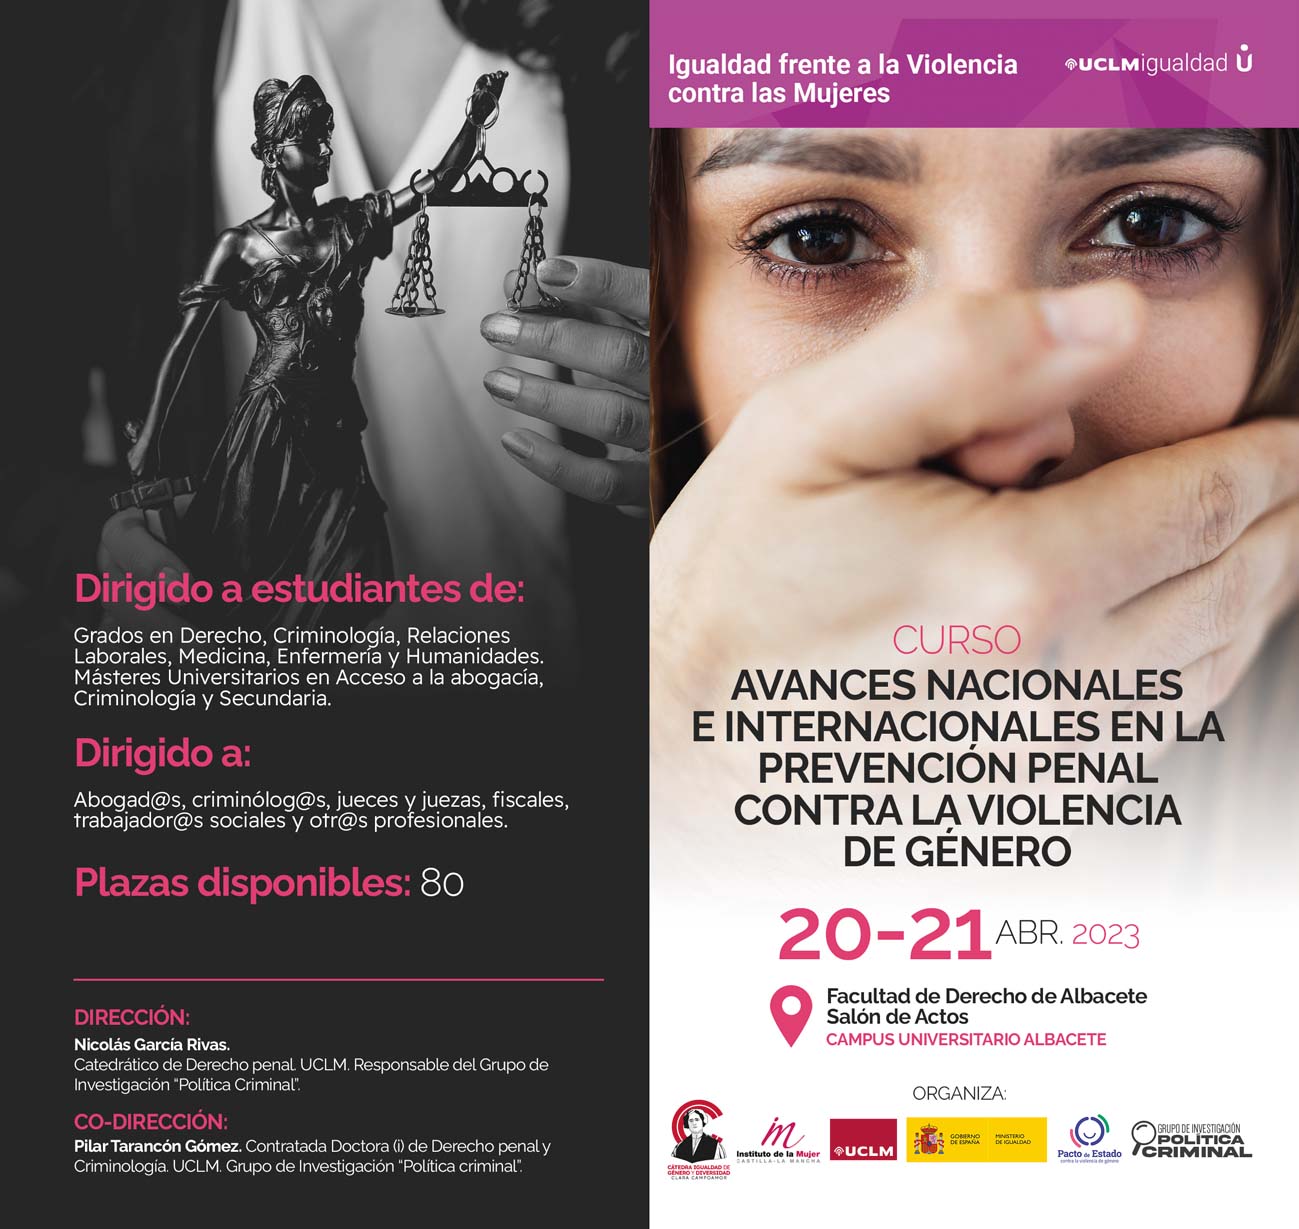 Curso “Avances nacionales e internacionales en la prevención penal contra la violencia de género”